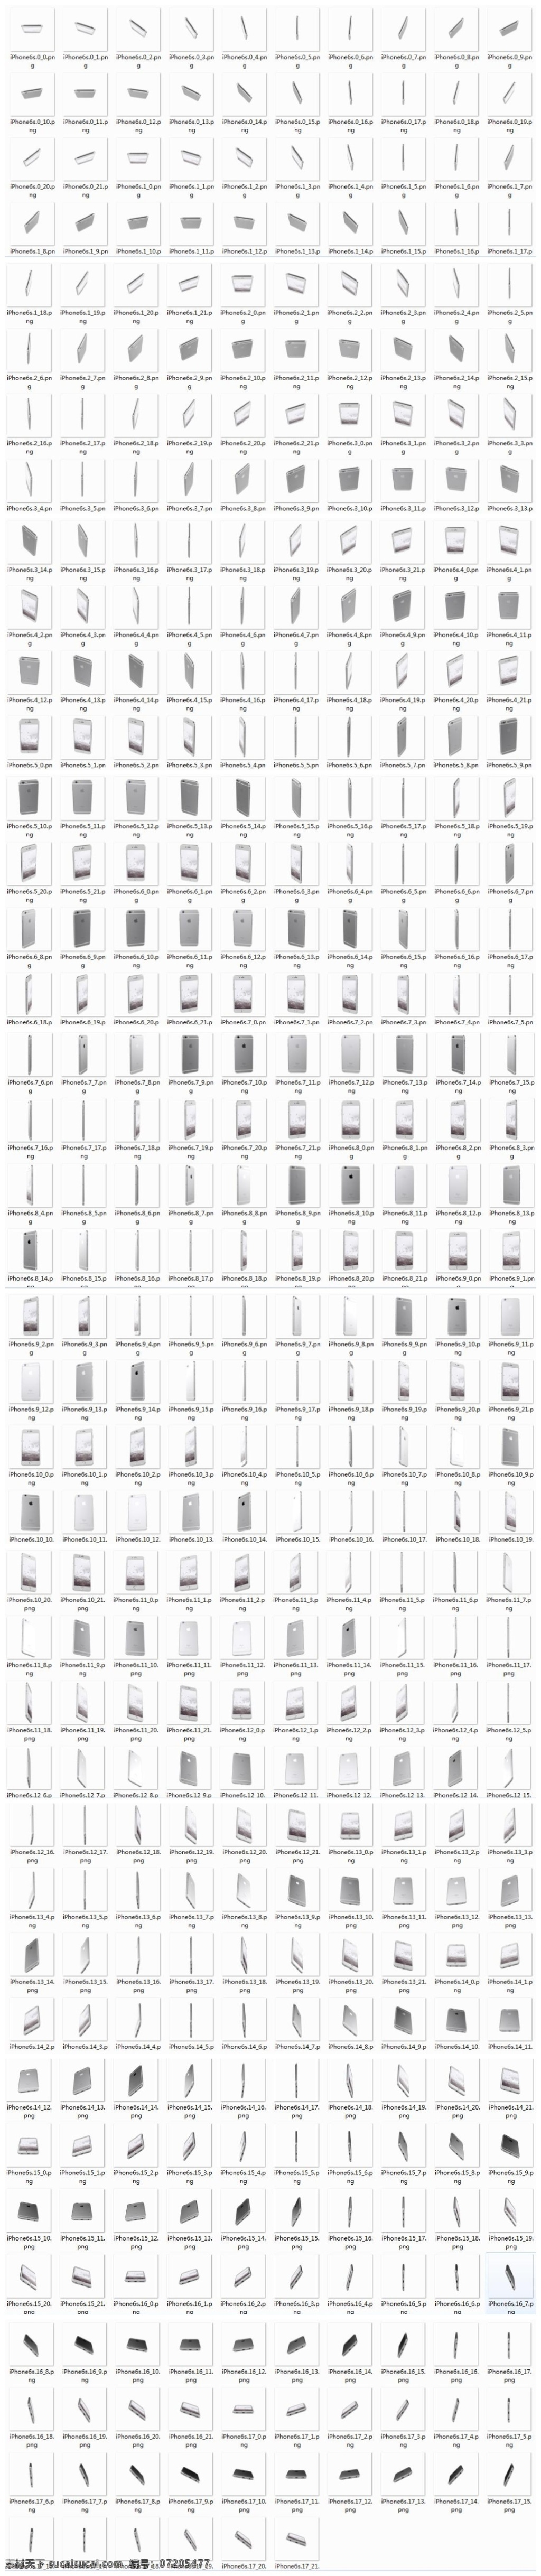 全 视角 iphone 6s模板合集 设计模版 ui设计 app设计 简洁素材 ui界面素材 ui界面 网页素材 界面设计 白色